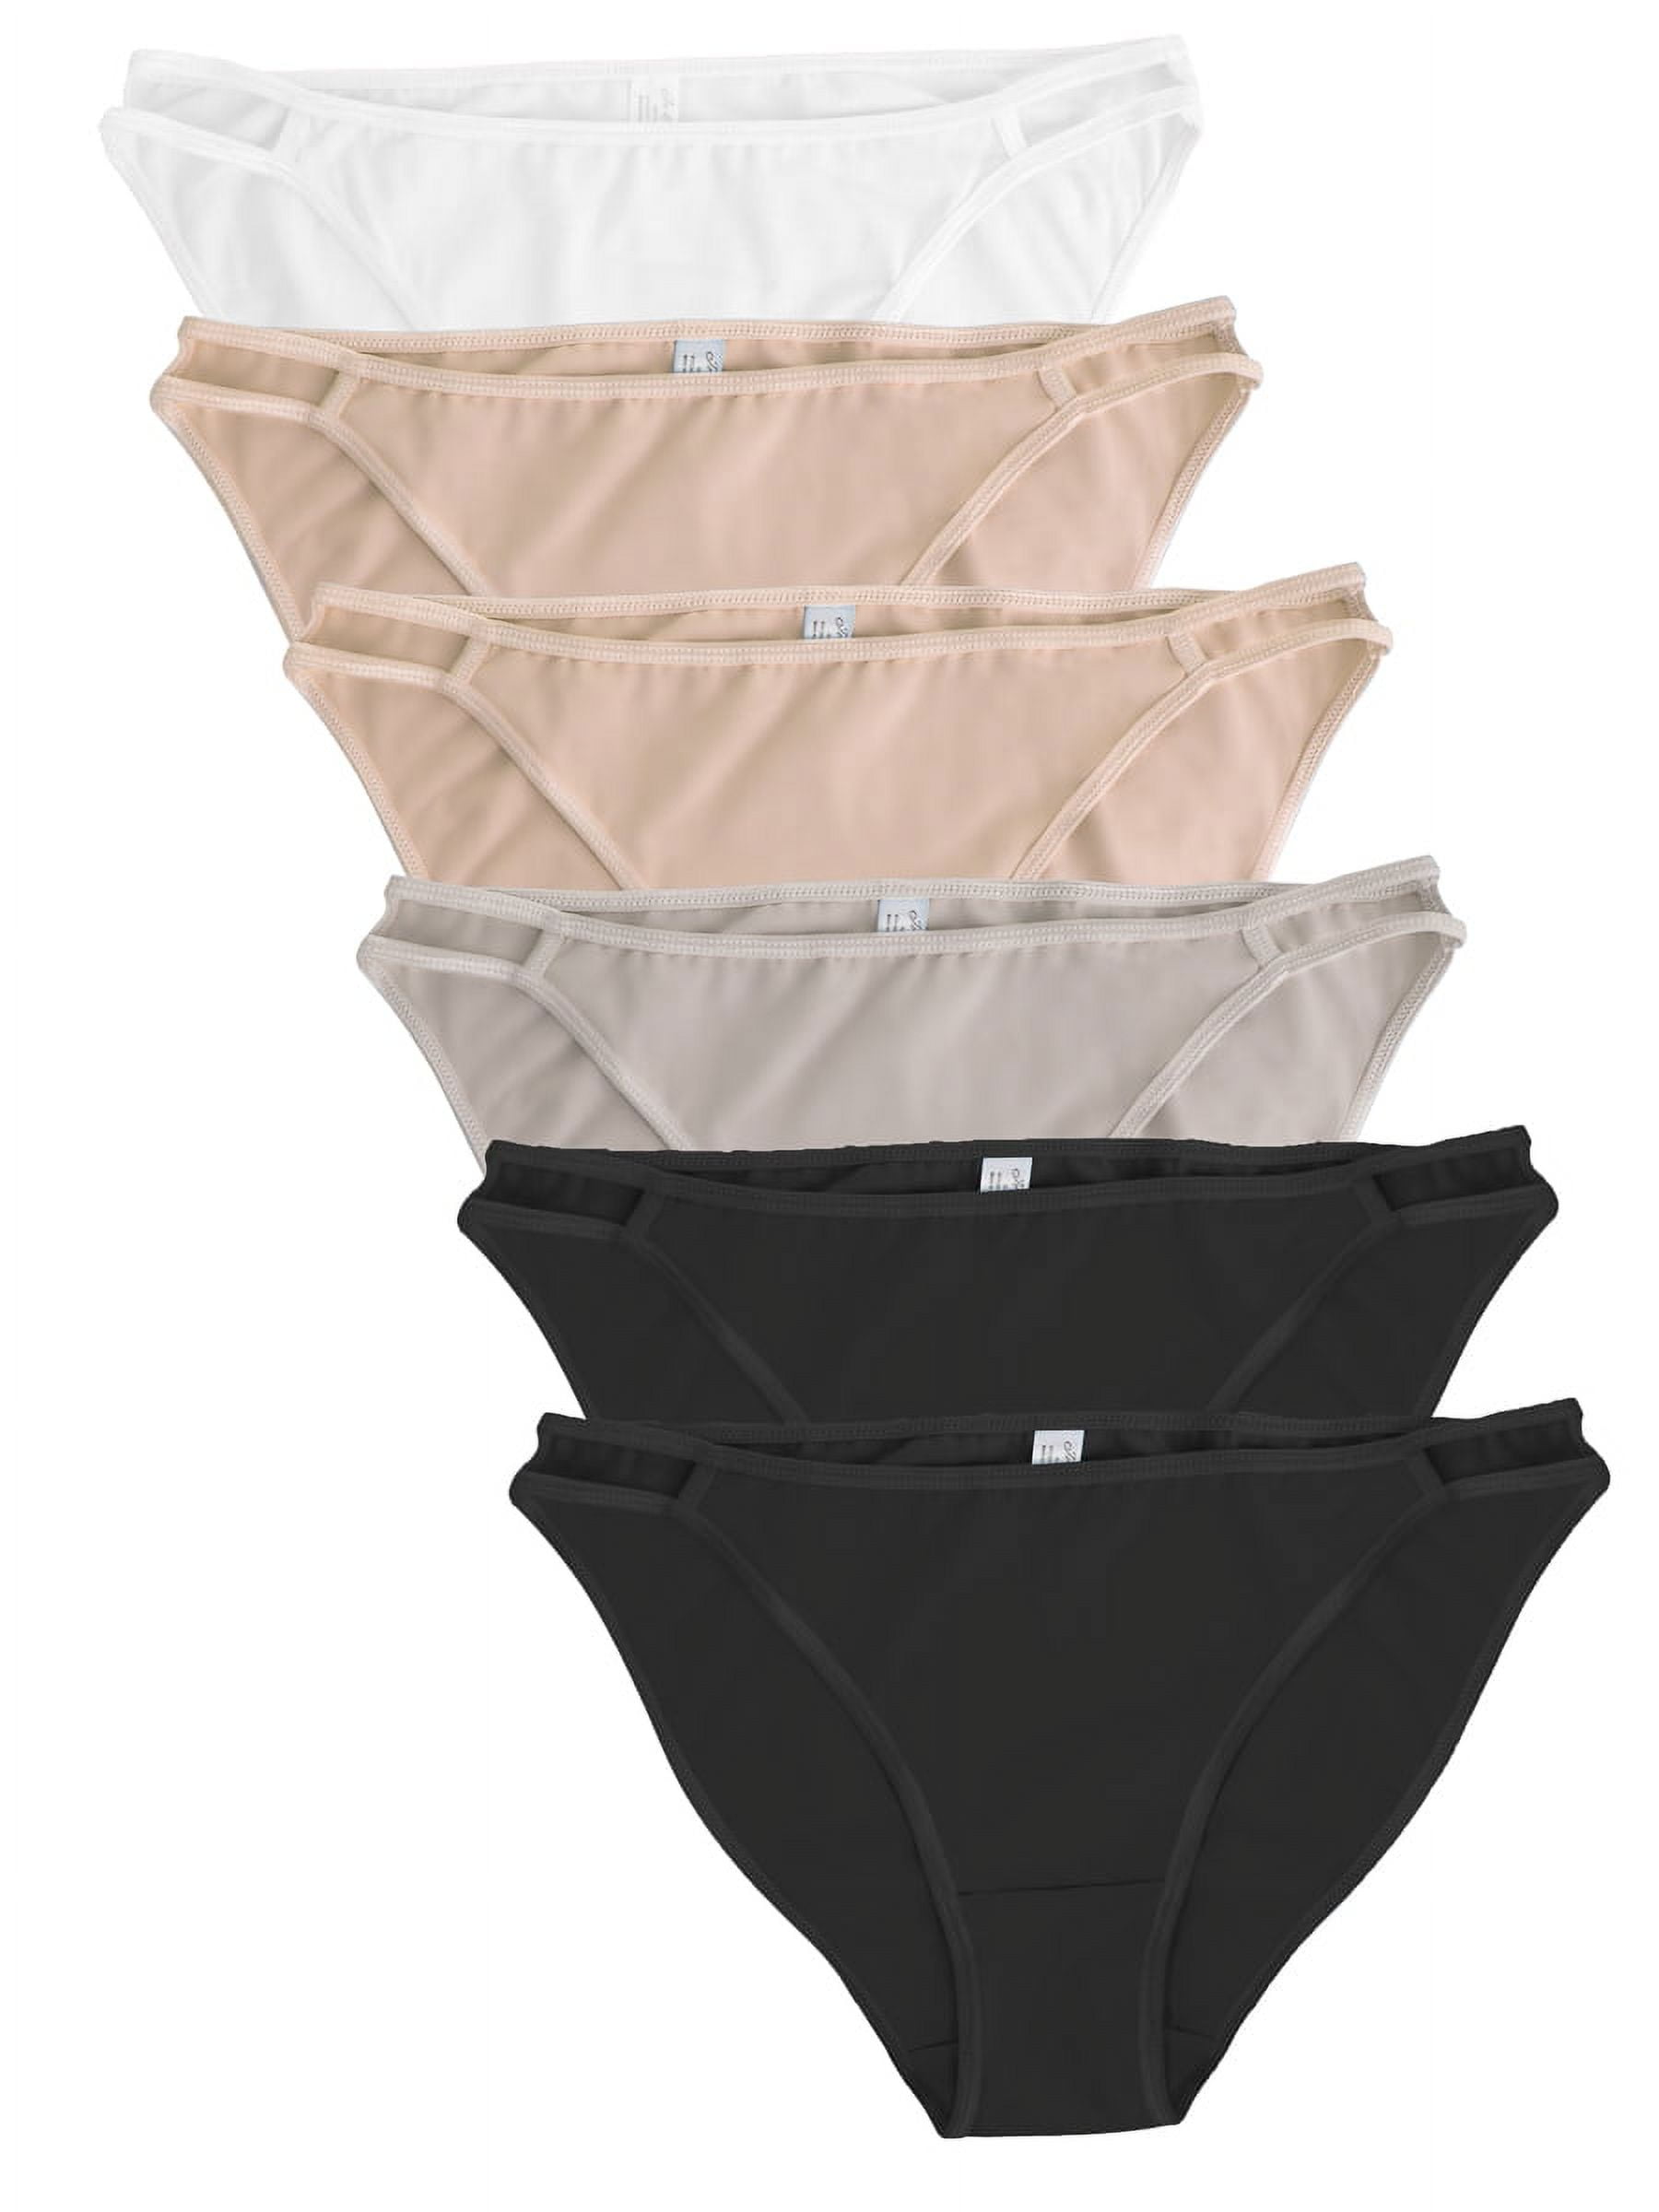 KaLI_store Ladies Underwear Women's Underwear Cotton Panties for